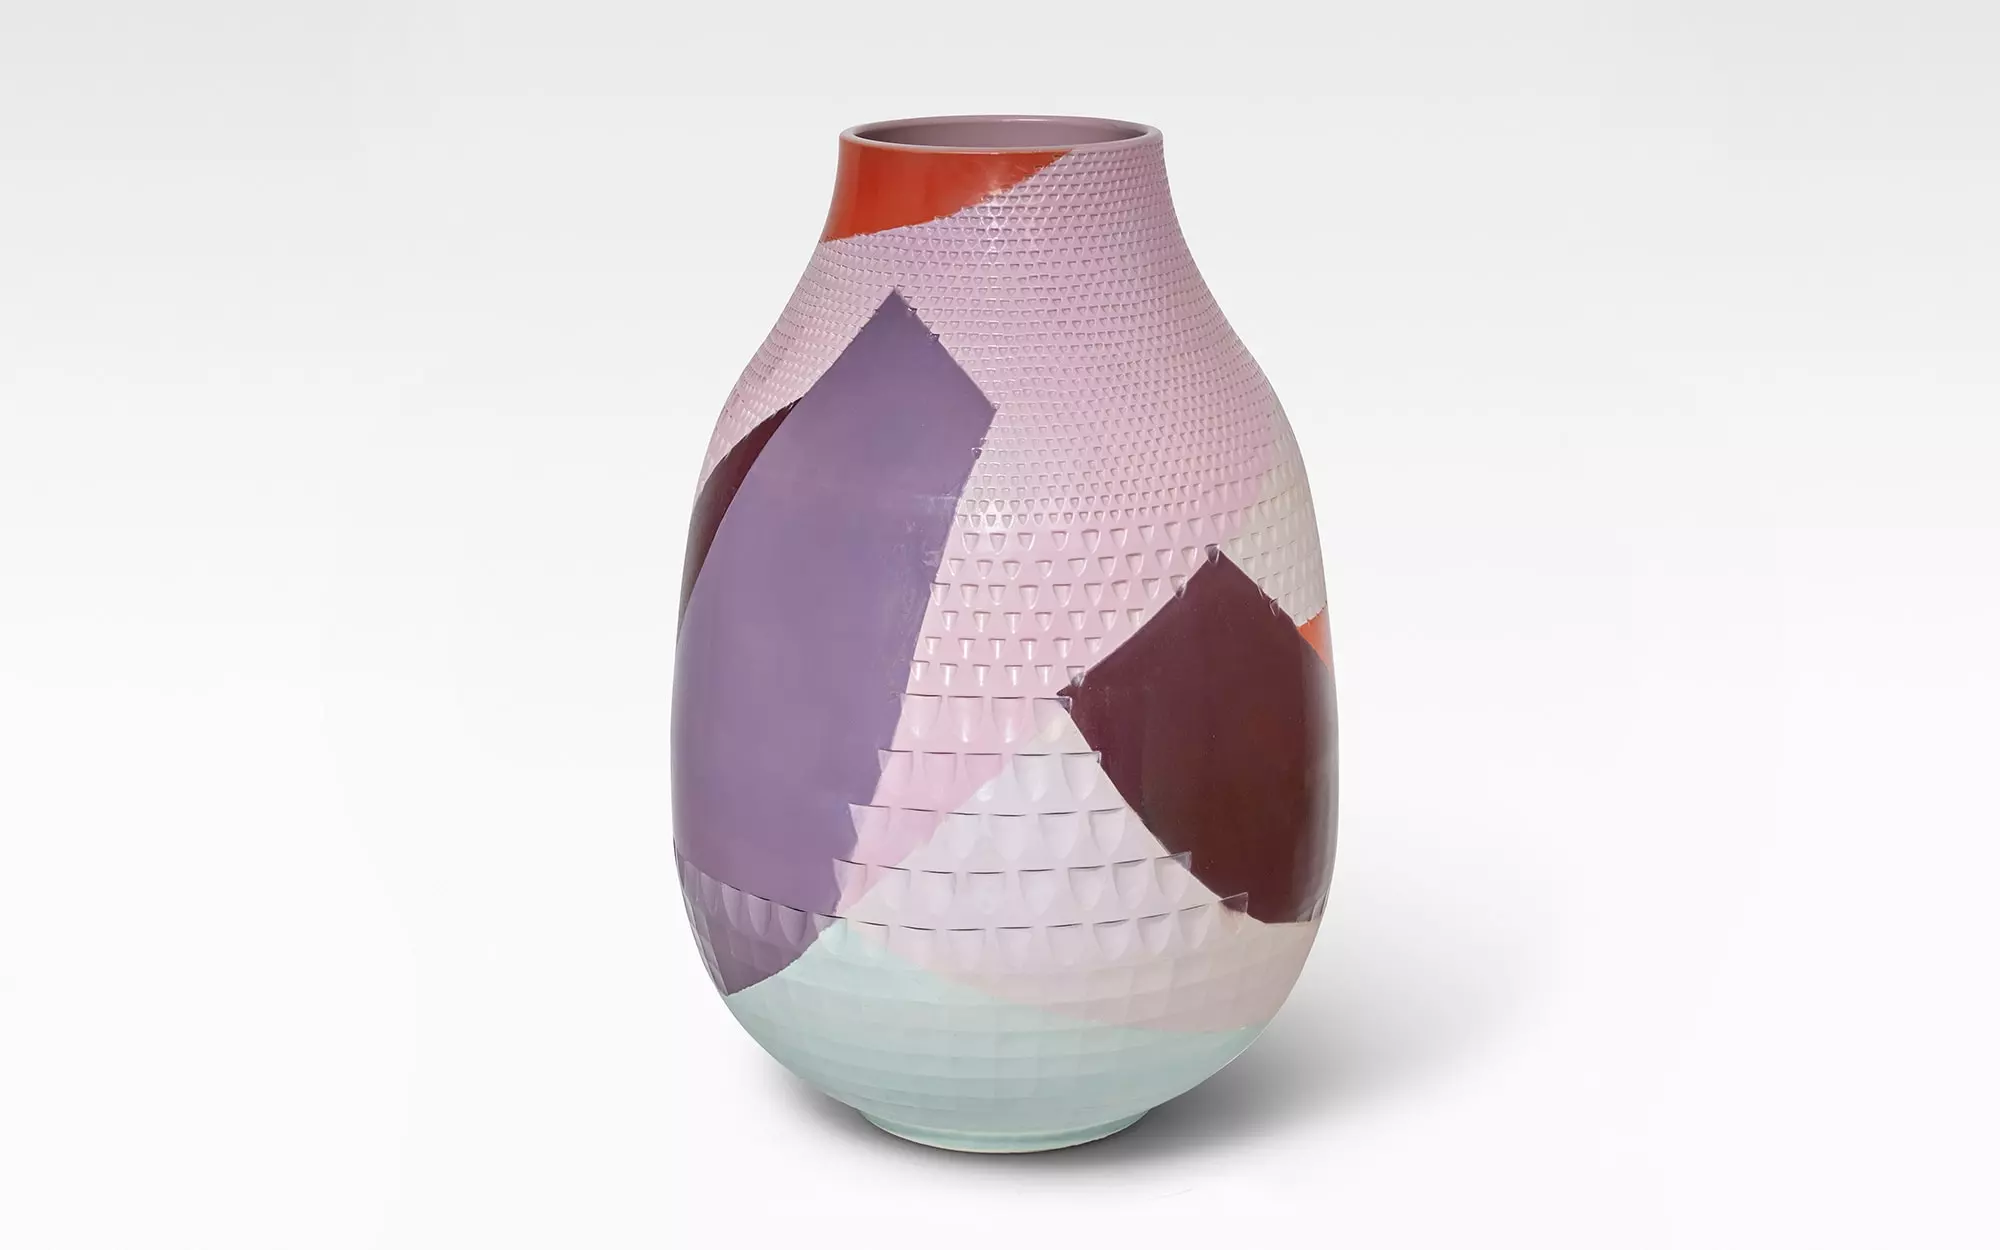 Diamond Vase - Day - Hella Jongerius - Design Miami / Basel 2019.